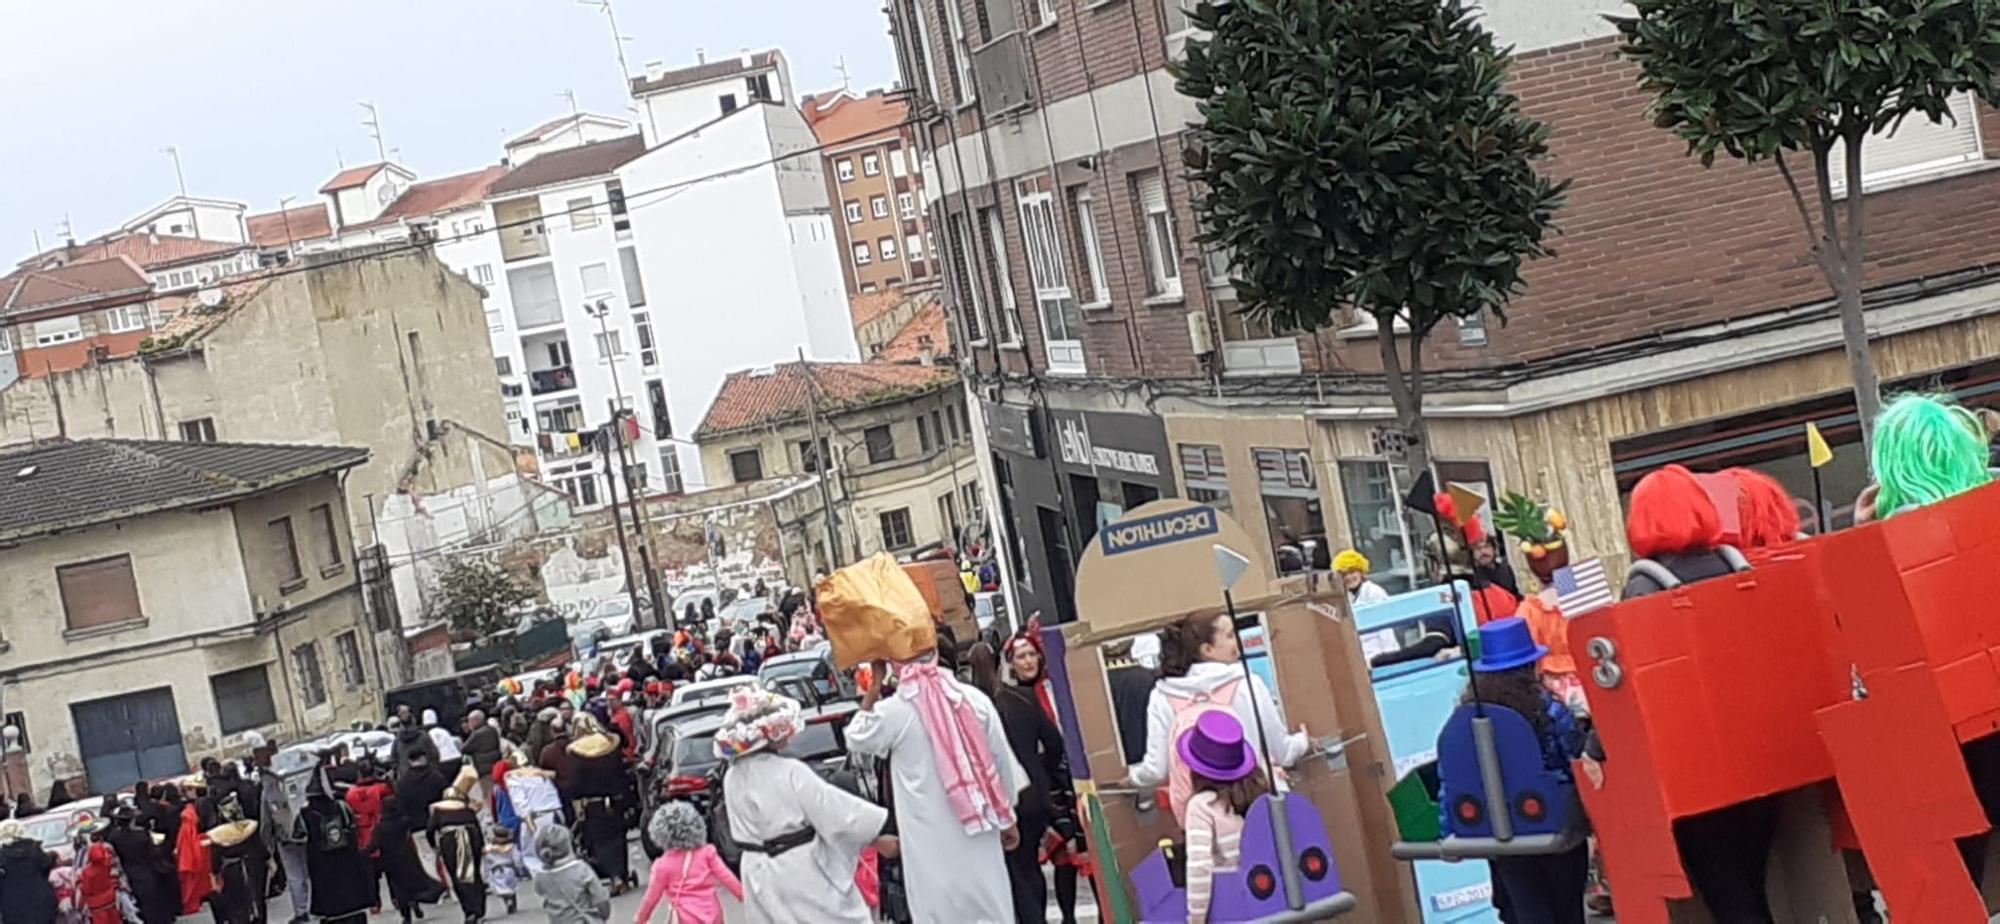 EN IMÁGENES: El desfile de Antroxu en Corvera